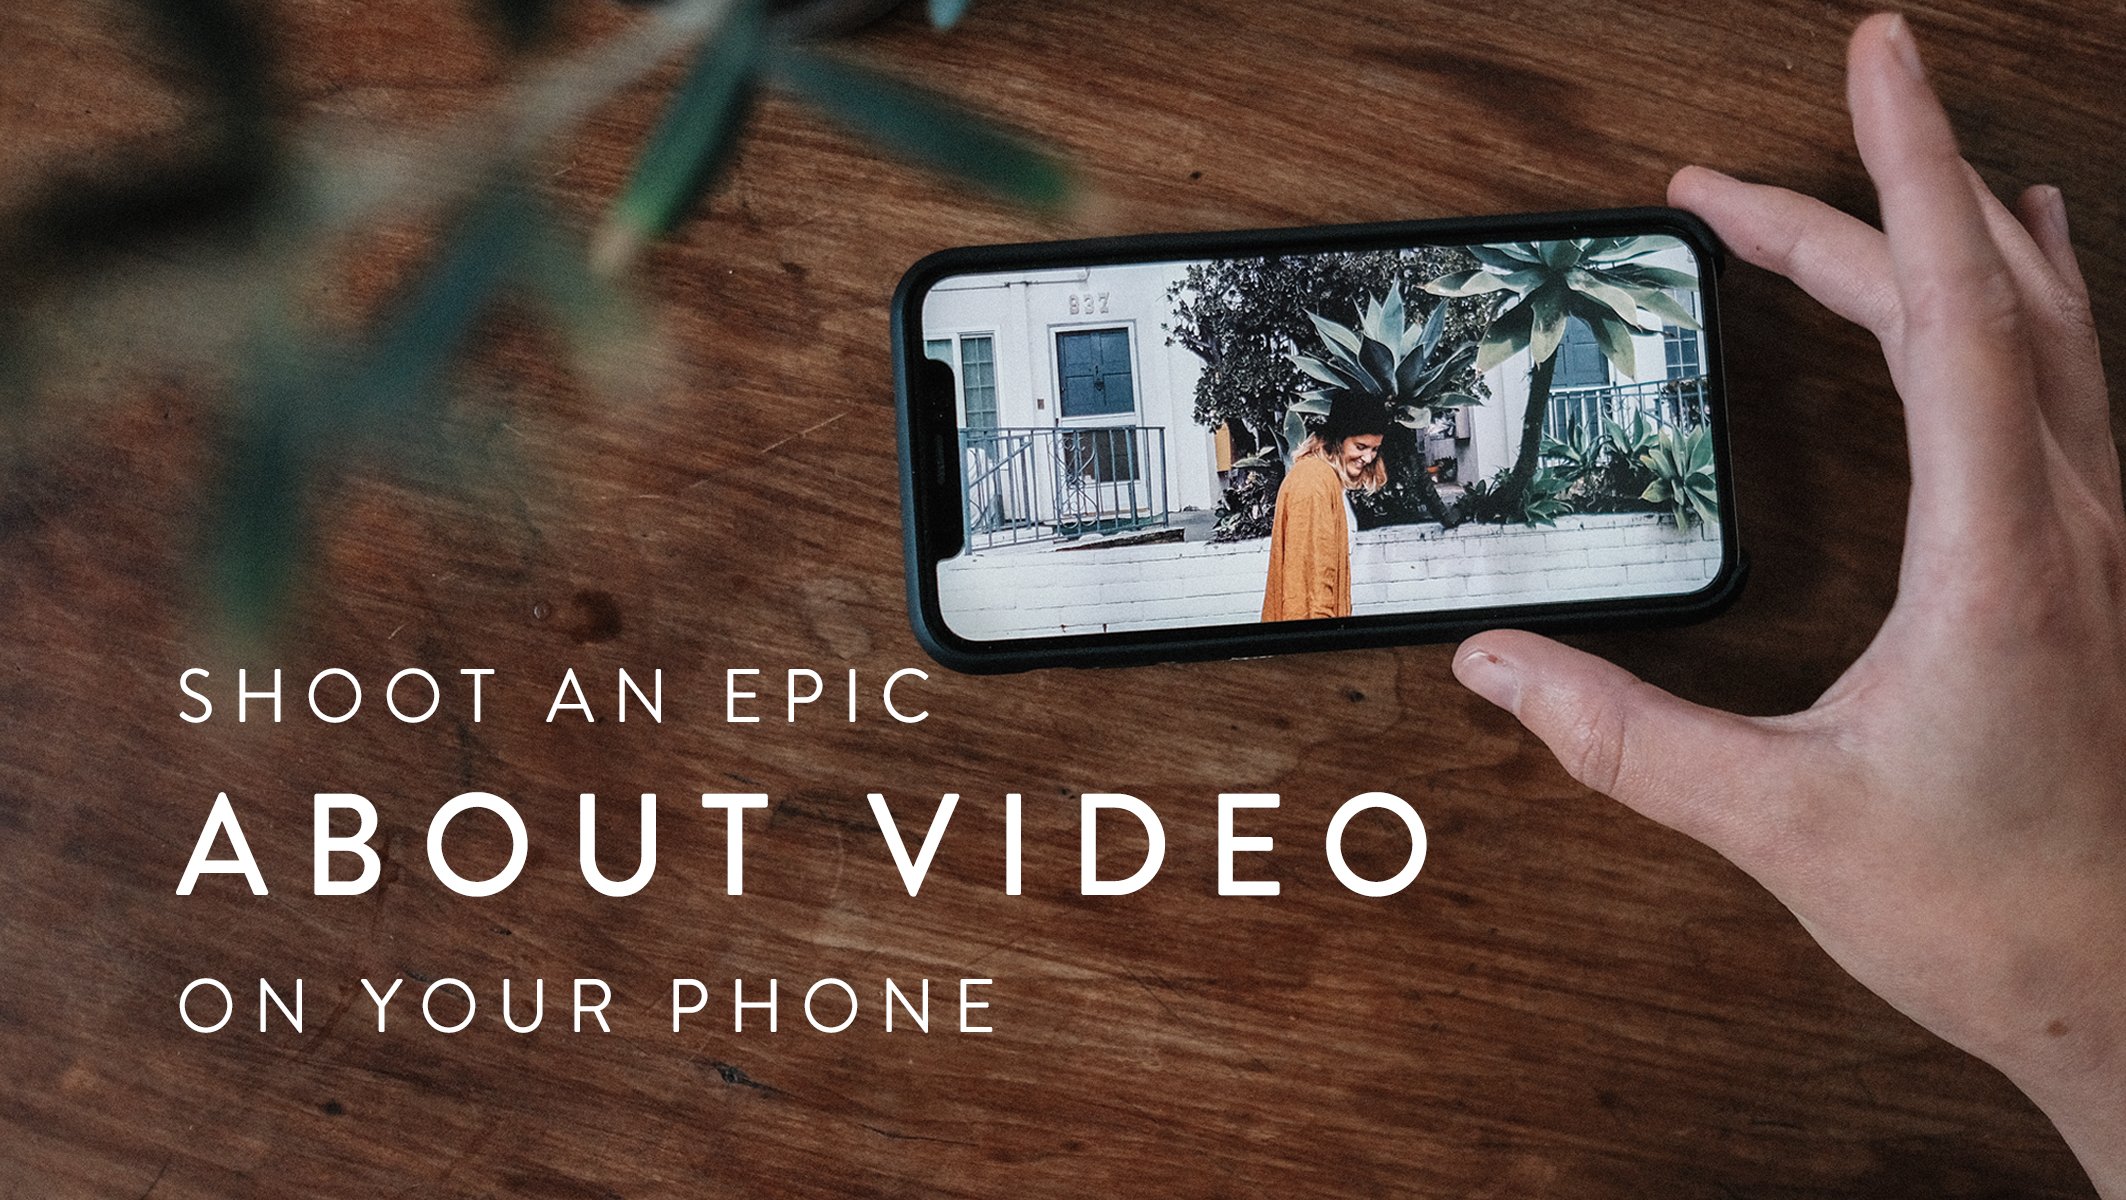 آموزش داستان خود را به اشتراک بگذارید: فیلمبرداری یک ویدیوی حماسی «درباره» در تلفن شما